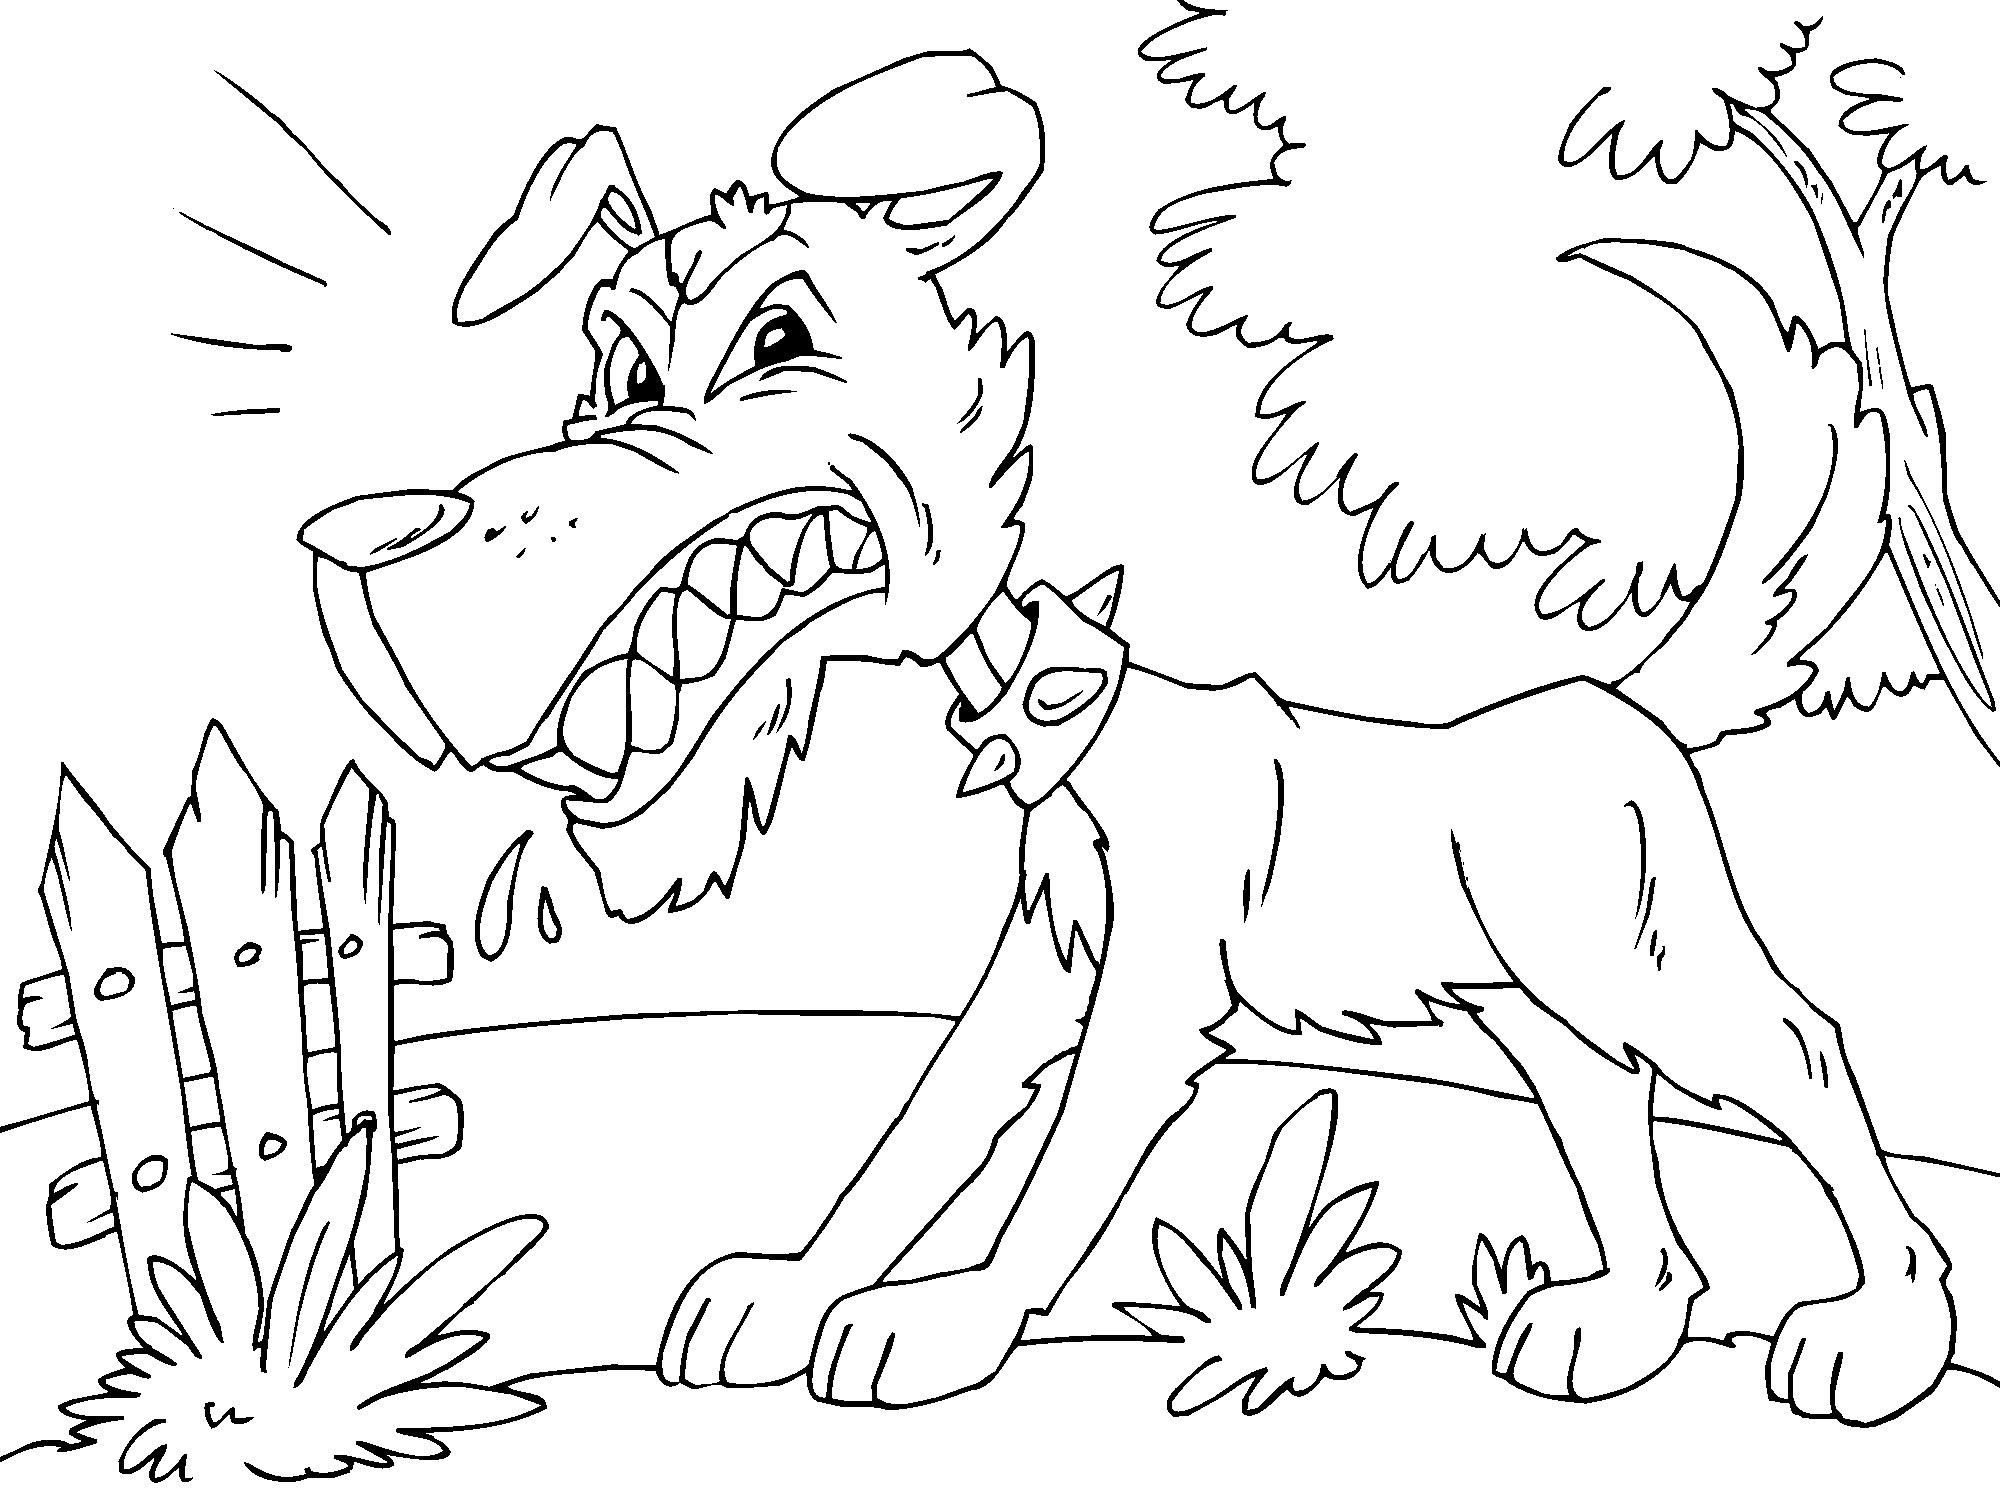 Pagina de colorat pentru copii cu desen animat câine furios